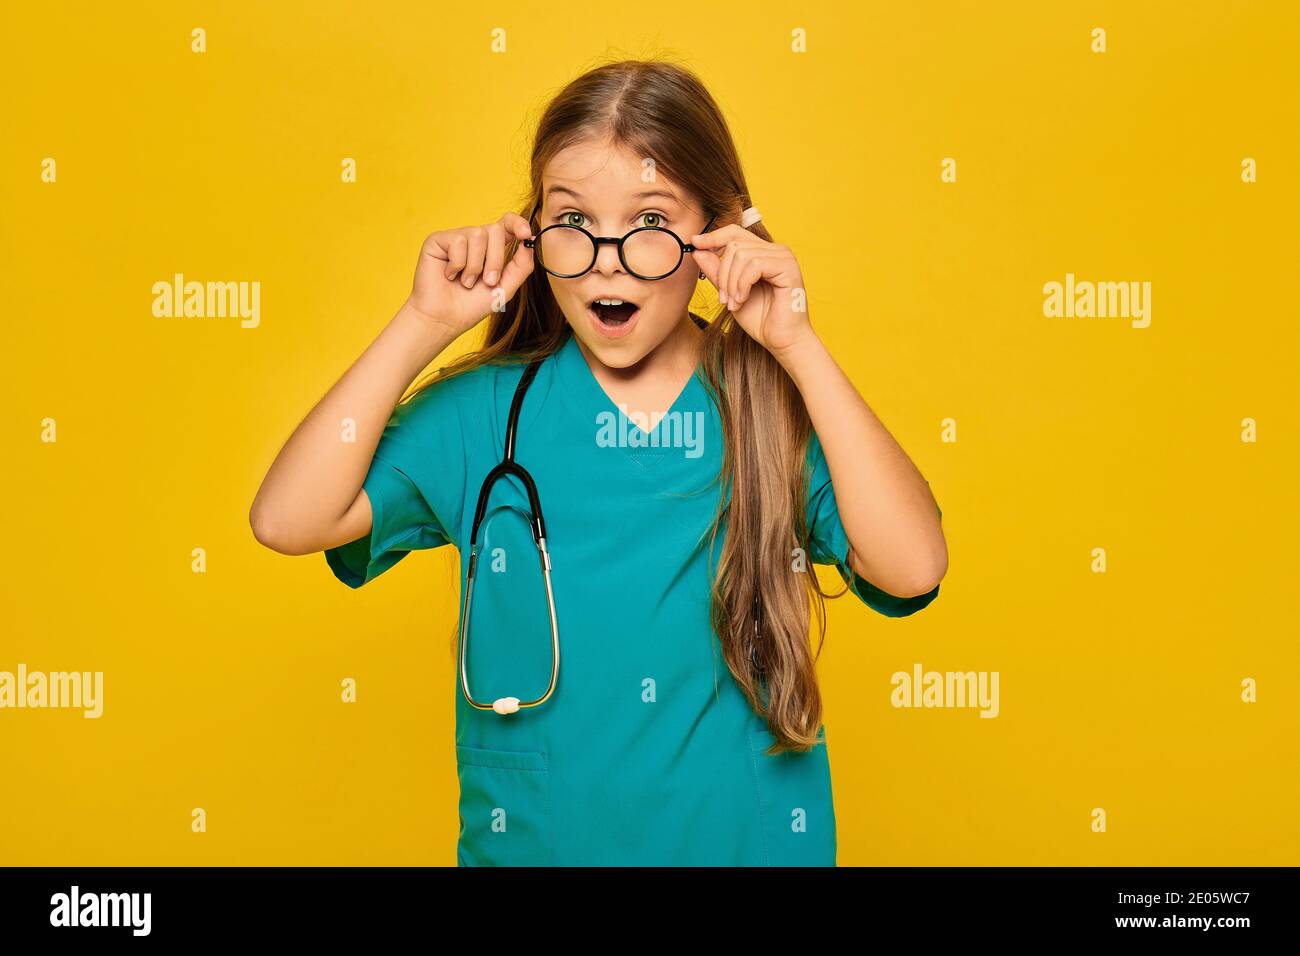 Kind trägt in einer blauen OP-Uniform und einem Stethoskop spielt den medizinischen Beruf, und zeigt auf ihrem Gesicht Gefühl der Überraschung, das Ausziehen von Glas Stockfoto